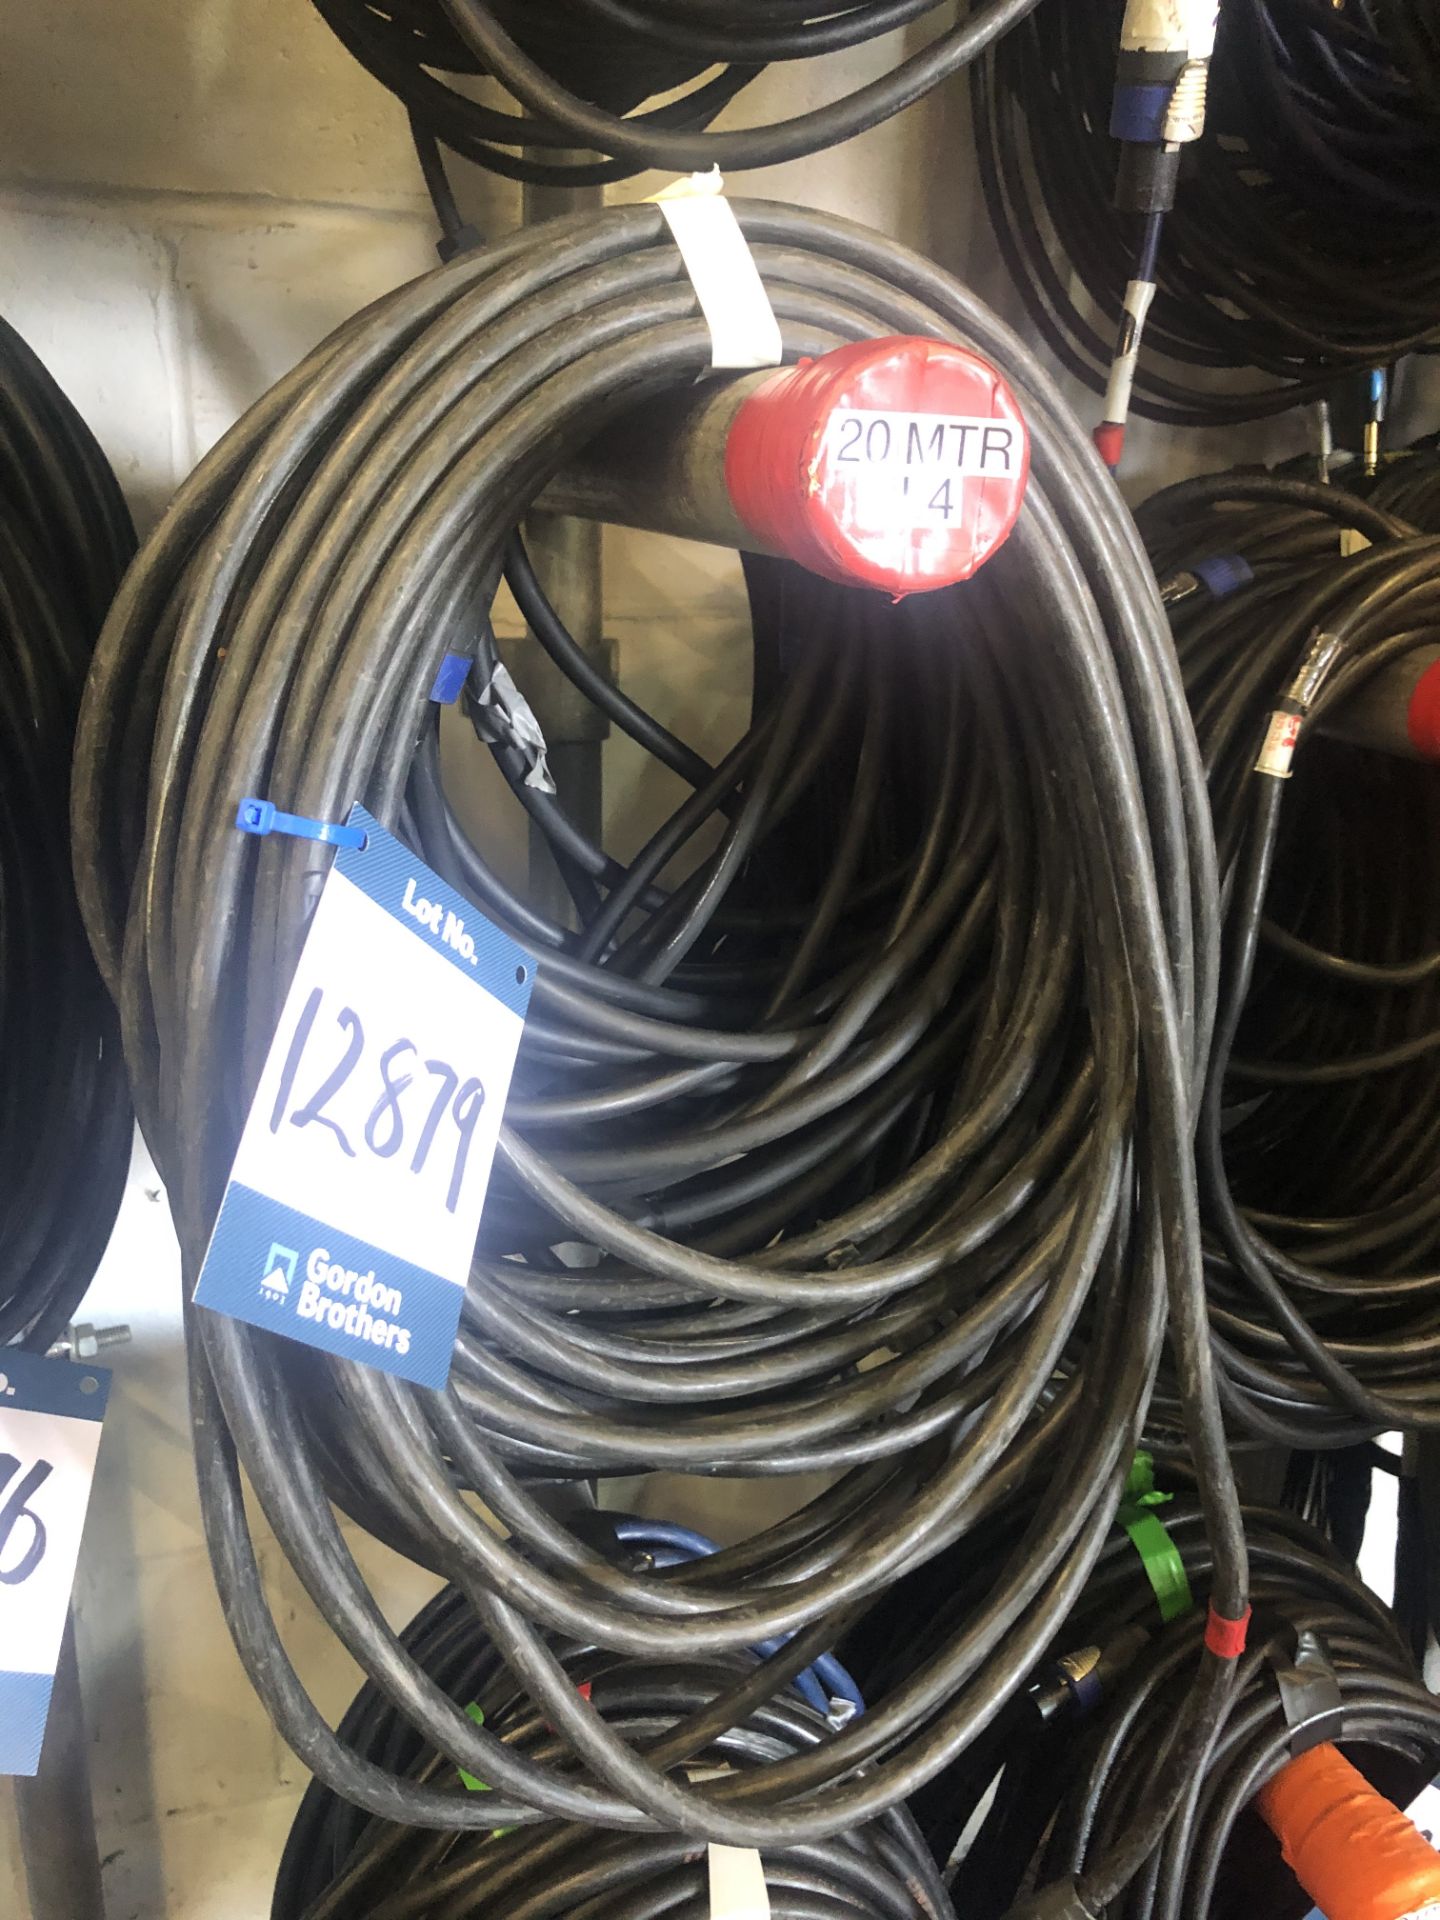 4x No. 20m NL4 cables